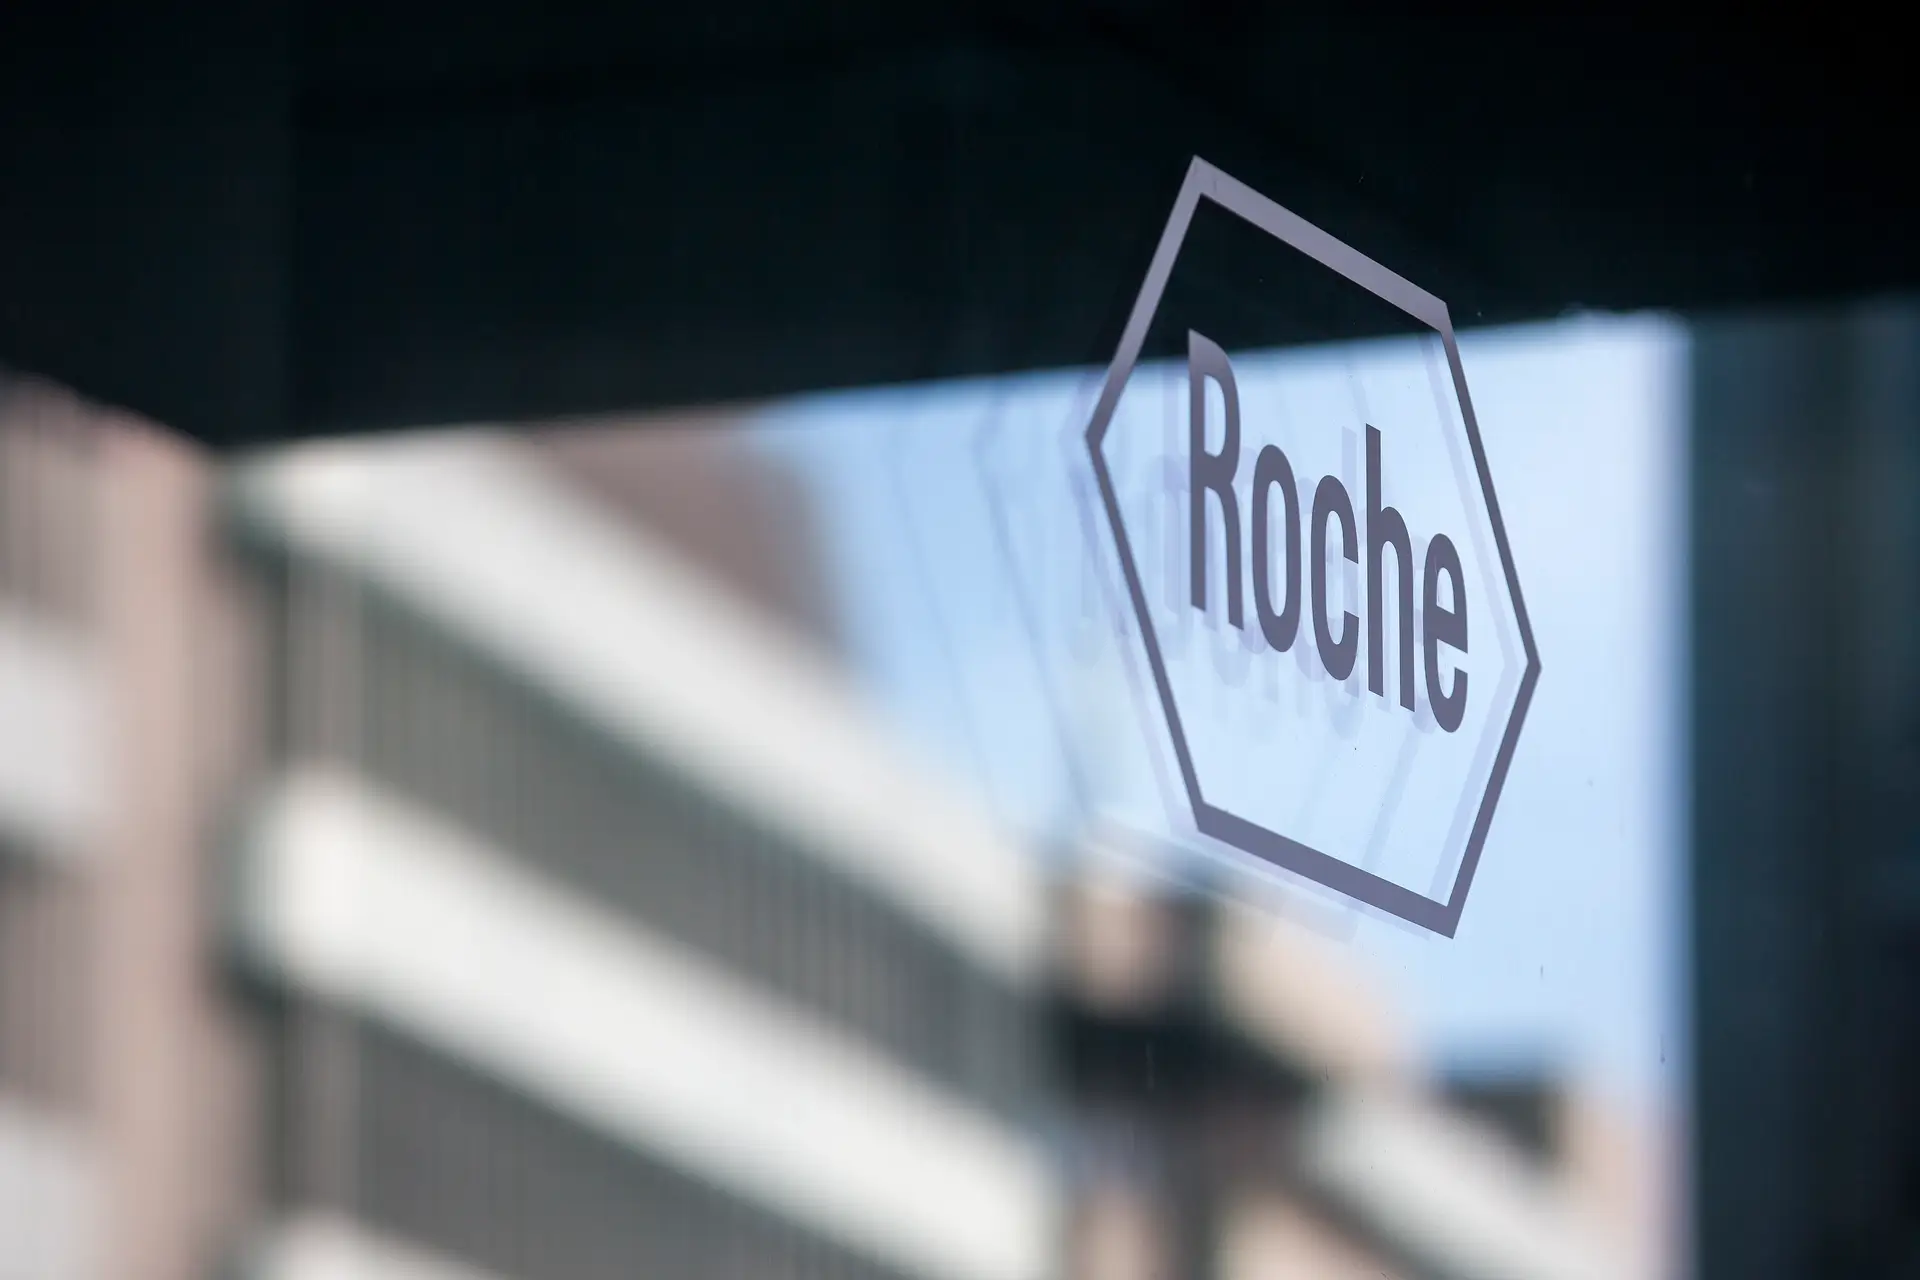 Vendas da Roche caem 6% no terceiro trimestre com alívio da crise pandémica